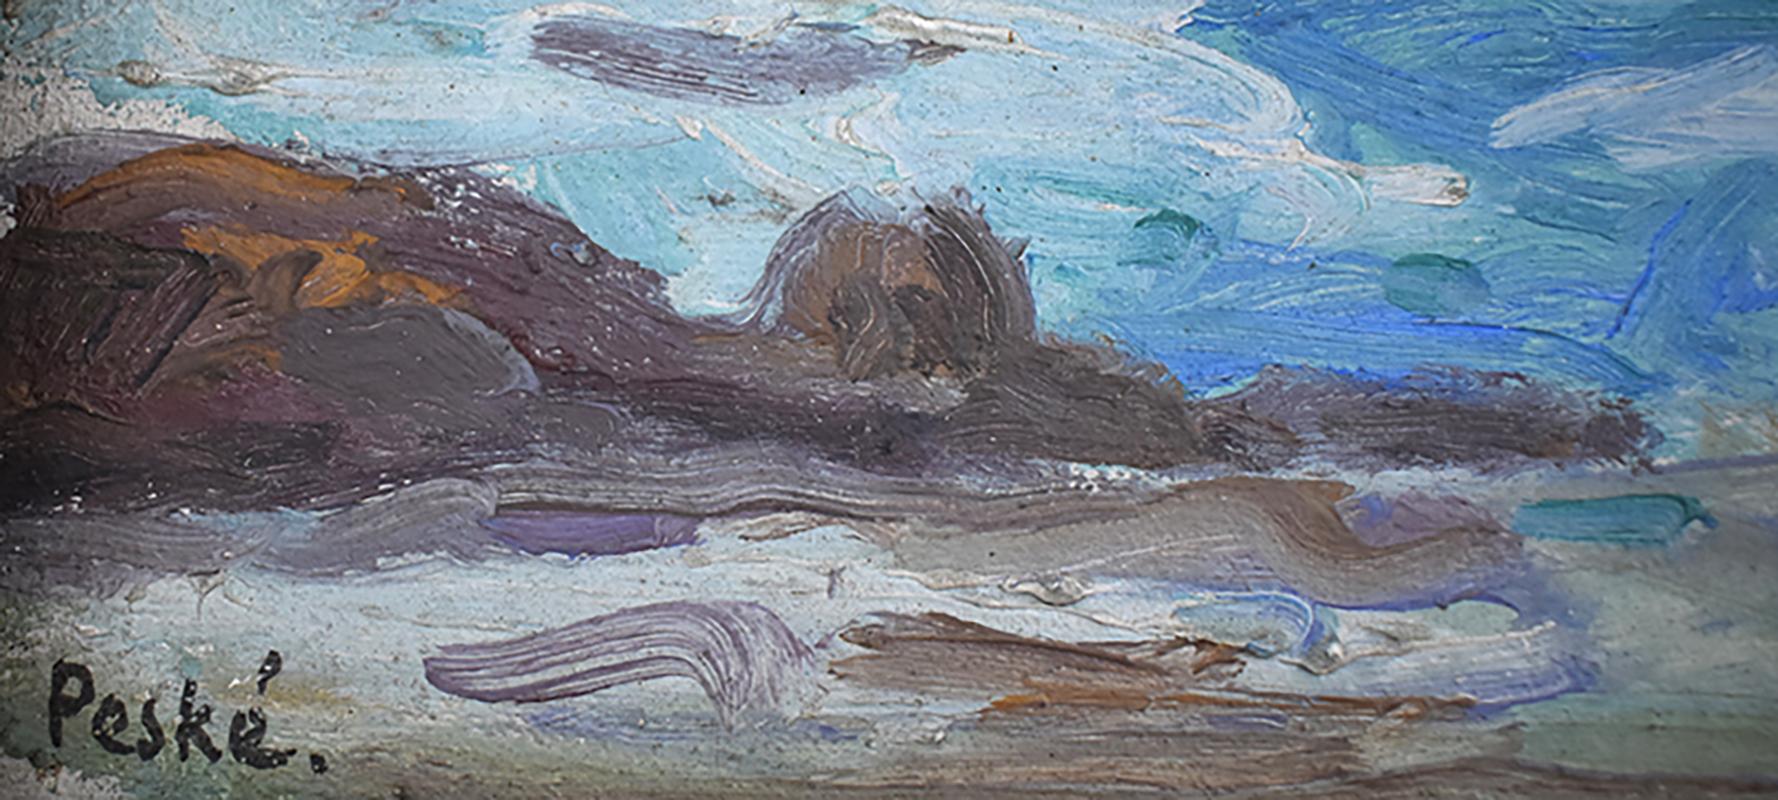 La vague, 1948 - Post-impressionnisme Painting par JEAN MIROSLAW PESKE